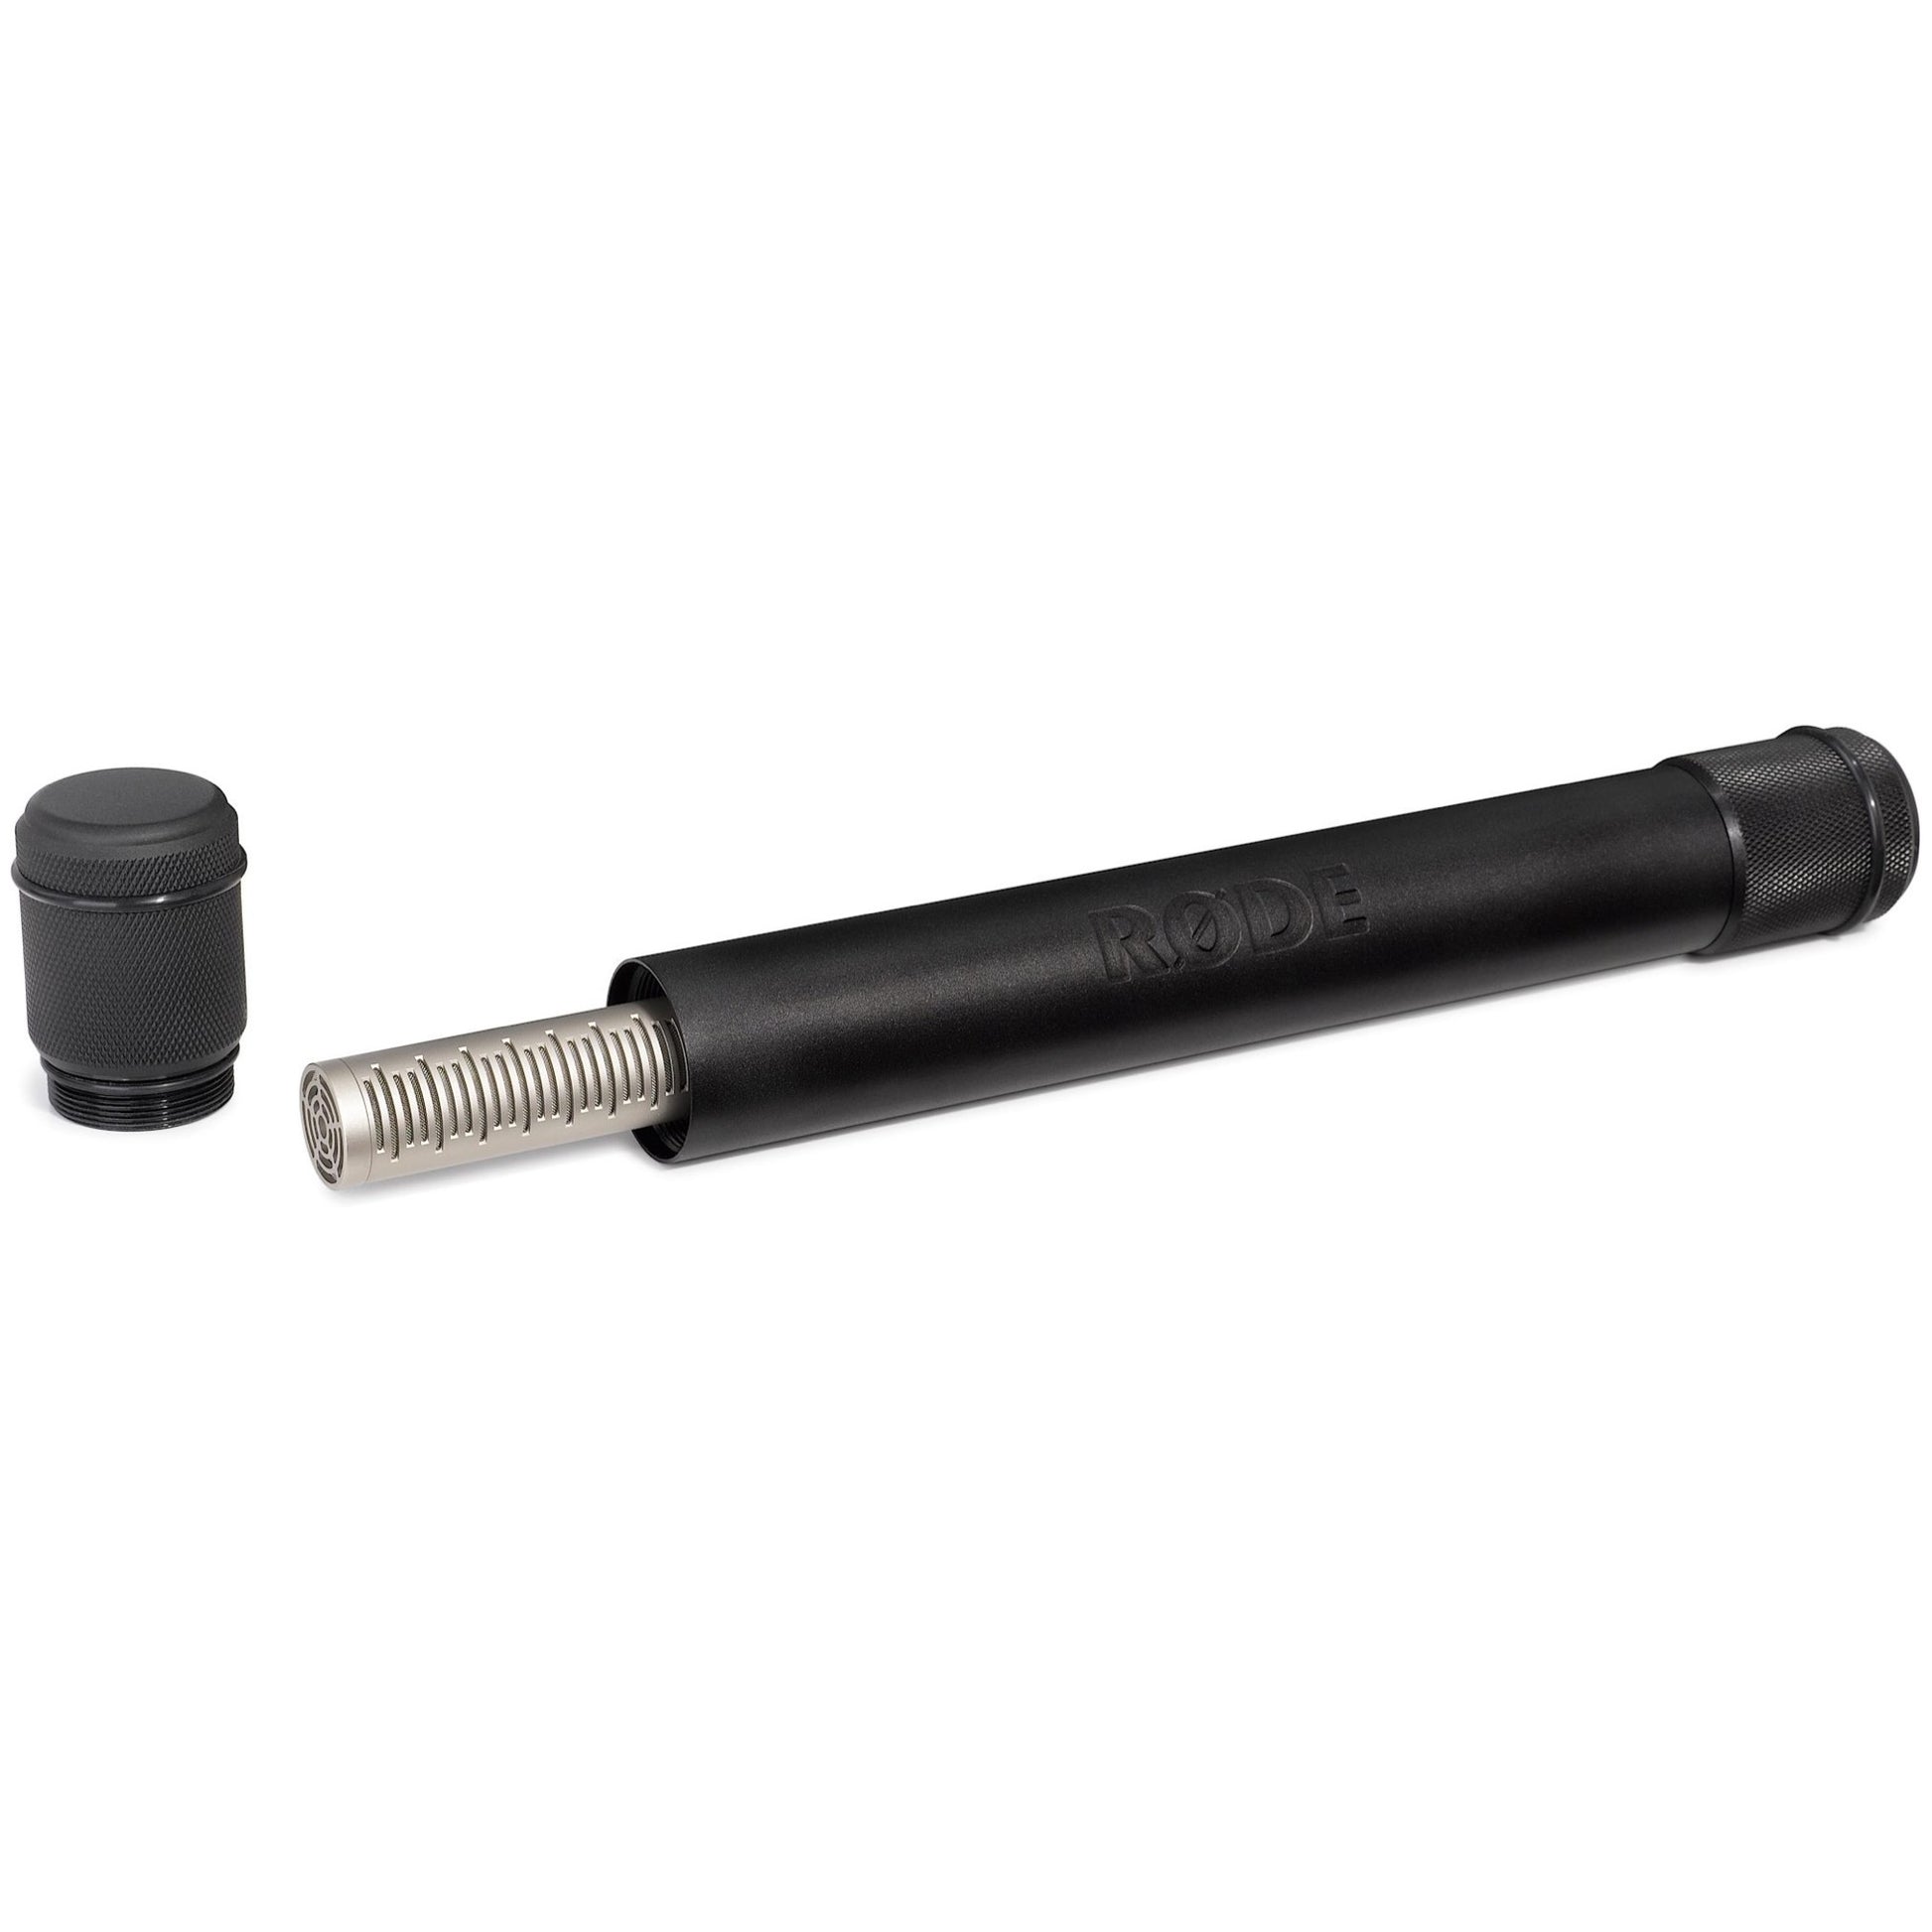 Rode NTG3 Shotgun Condenser Microphone, Black